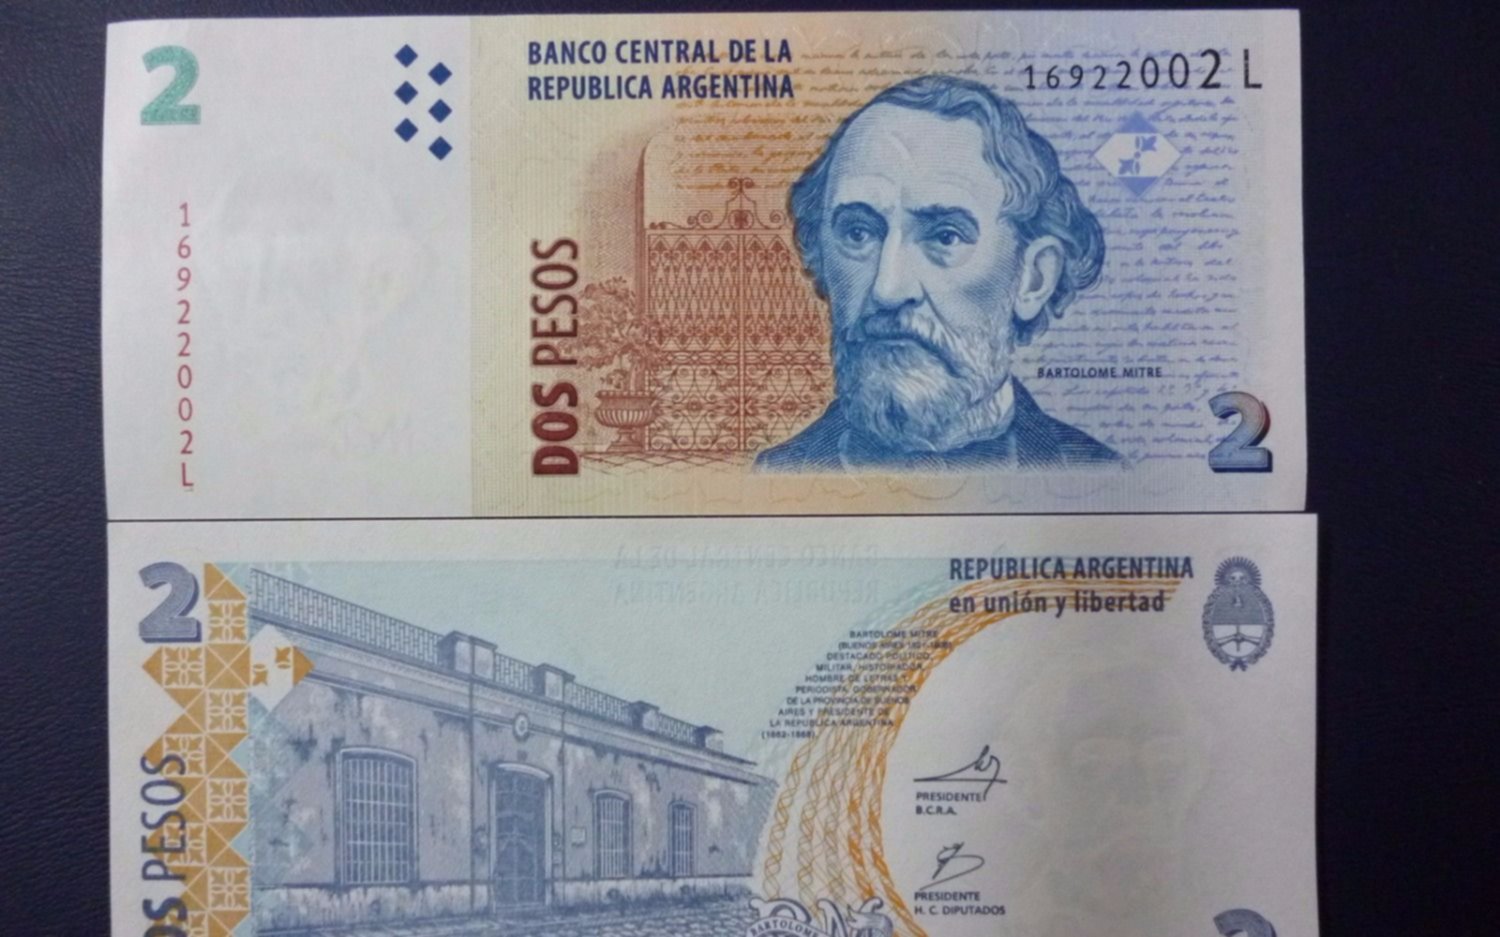 El Banco Central anunció que el billete de $2 quedará fuera de circulación